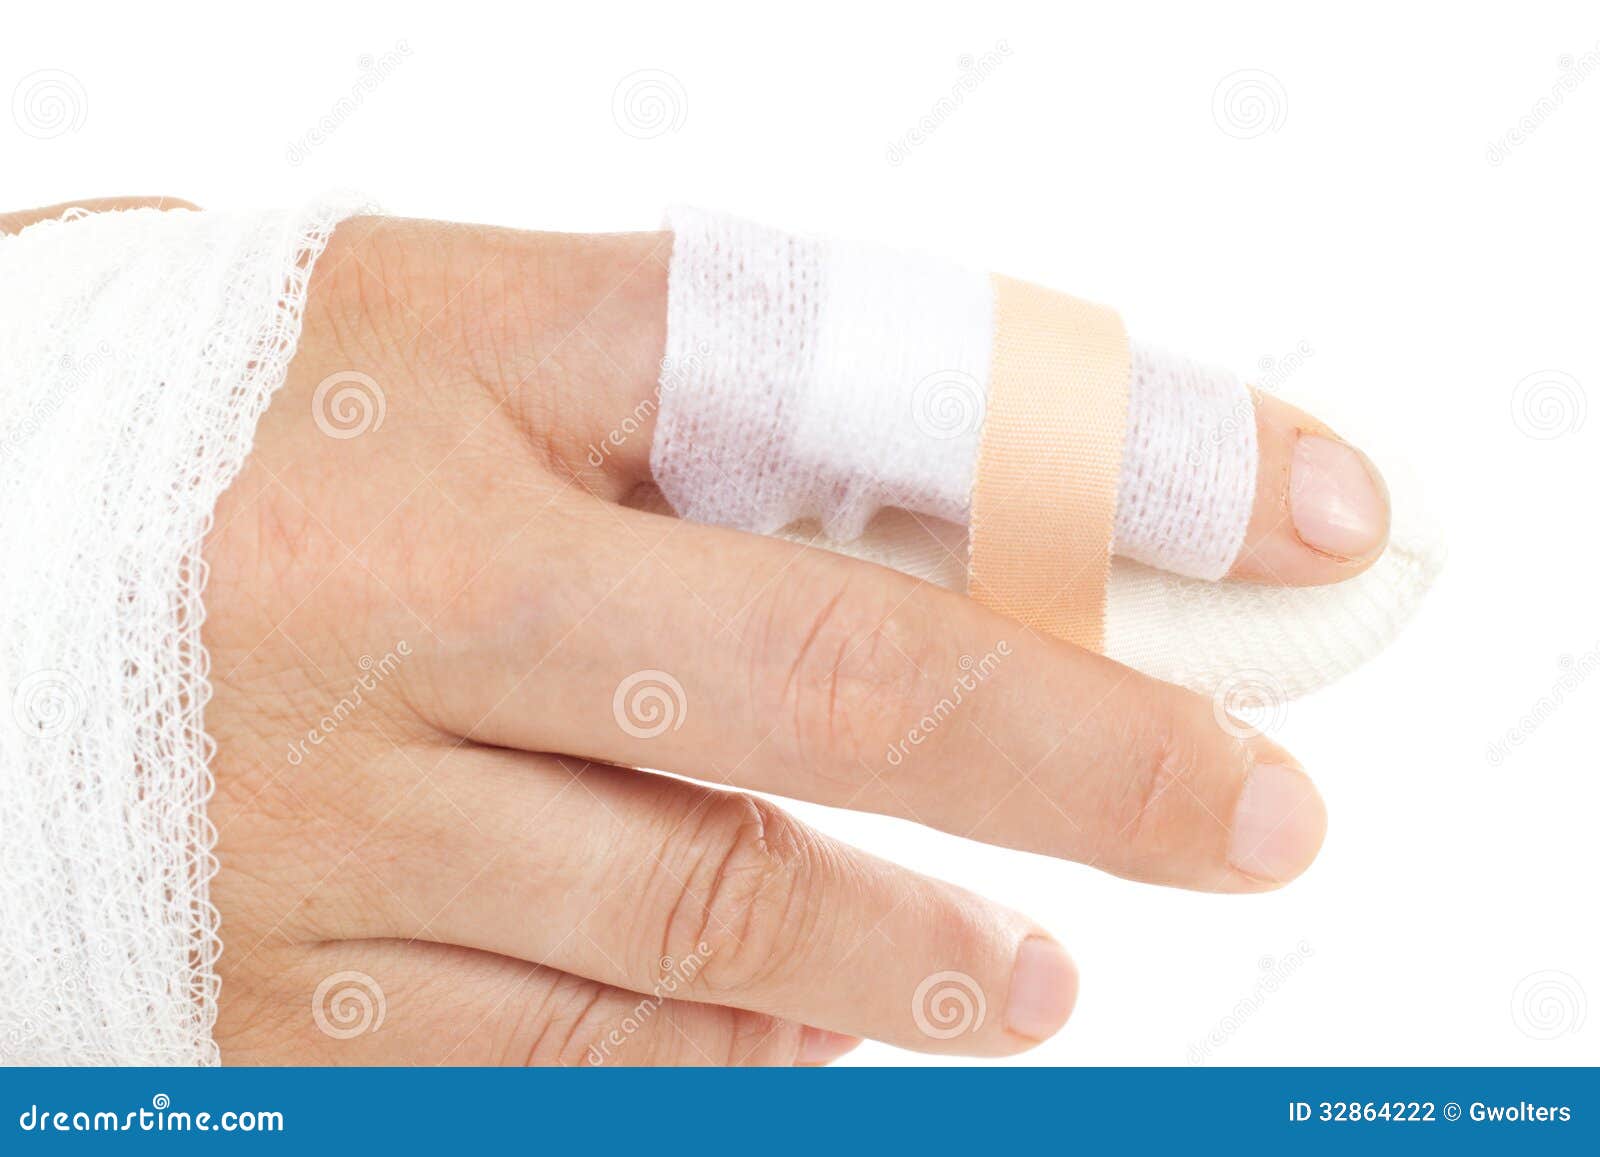 平时手指被割伤应该怎么处理? - 知乎